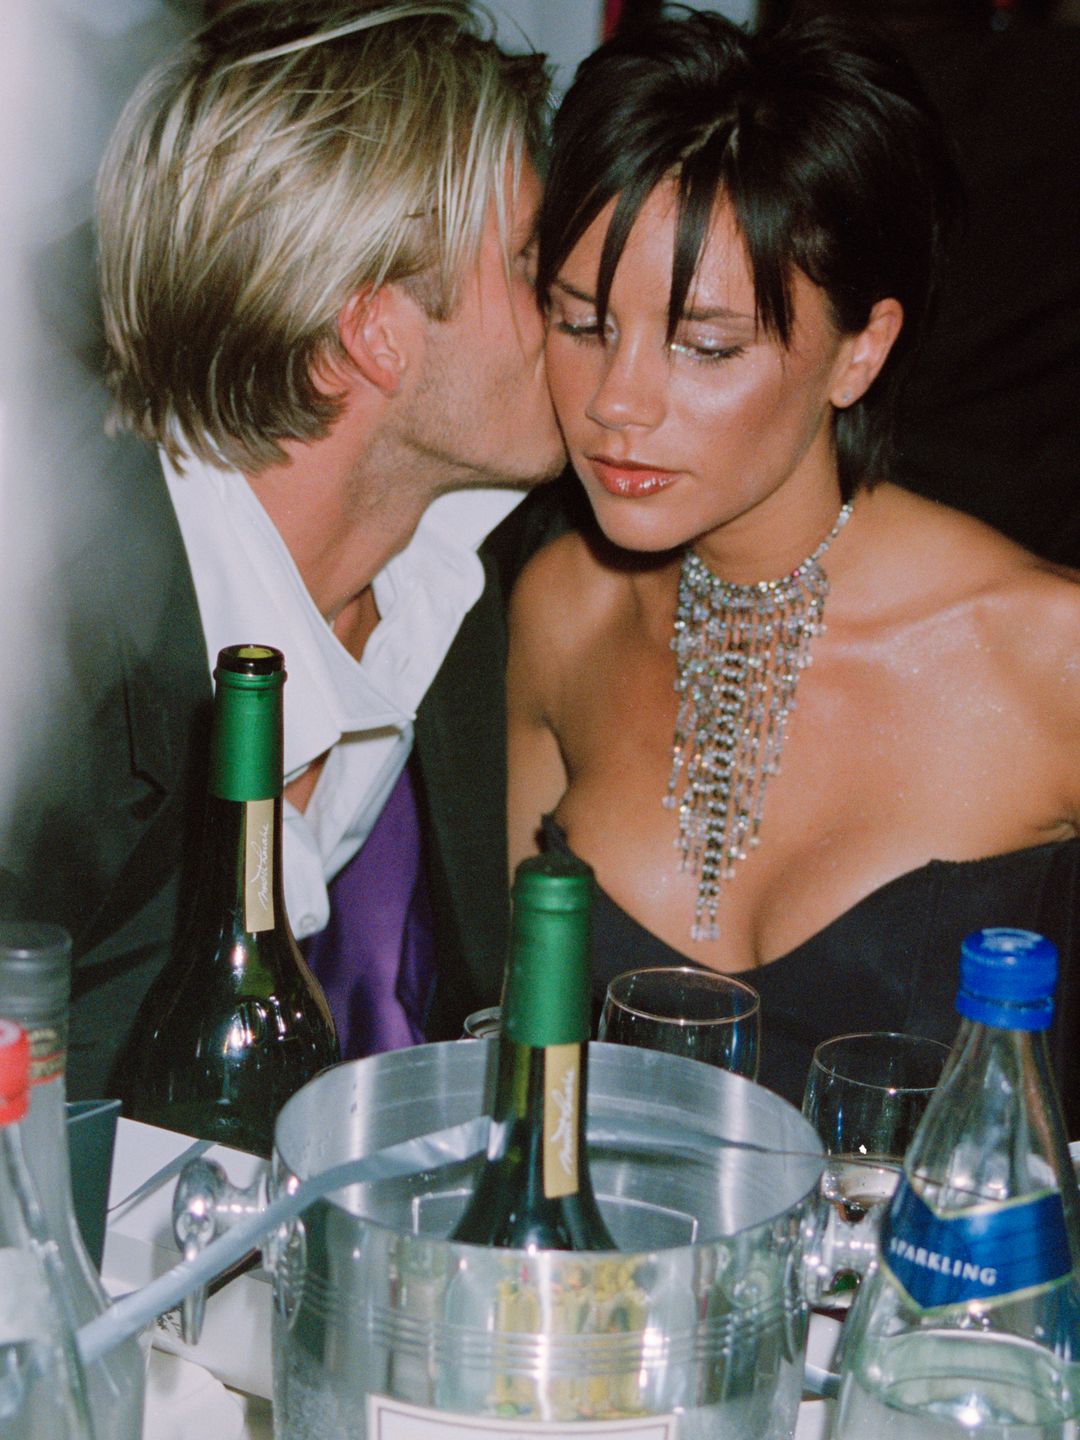 David whispering in Victoria Beckham's ear over dinner